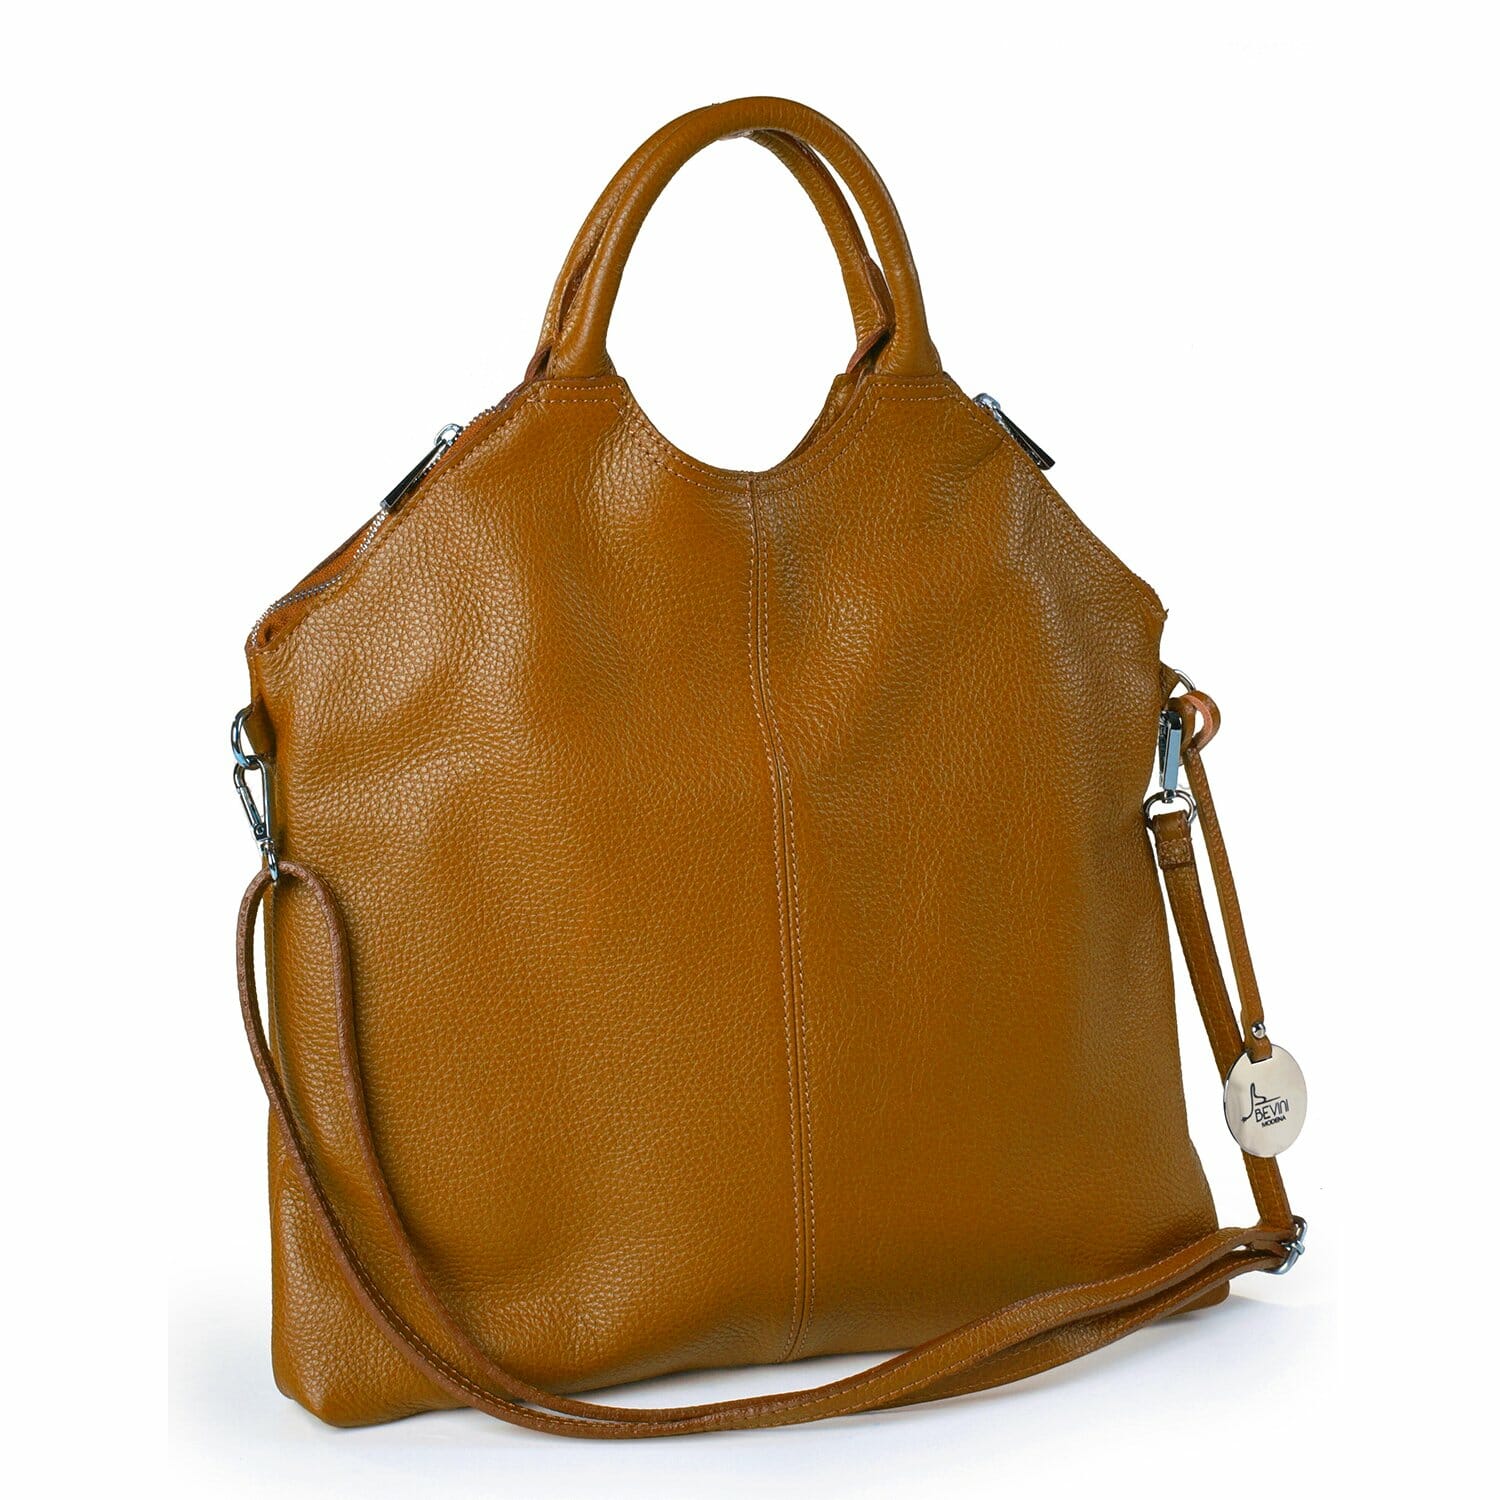 Dollaro Leather Foldable Clutch Bag (B239)